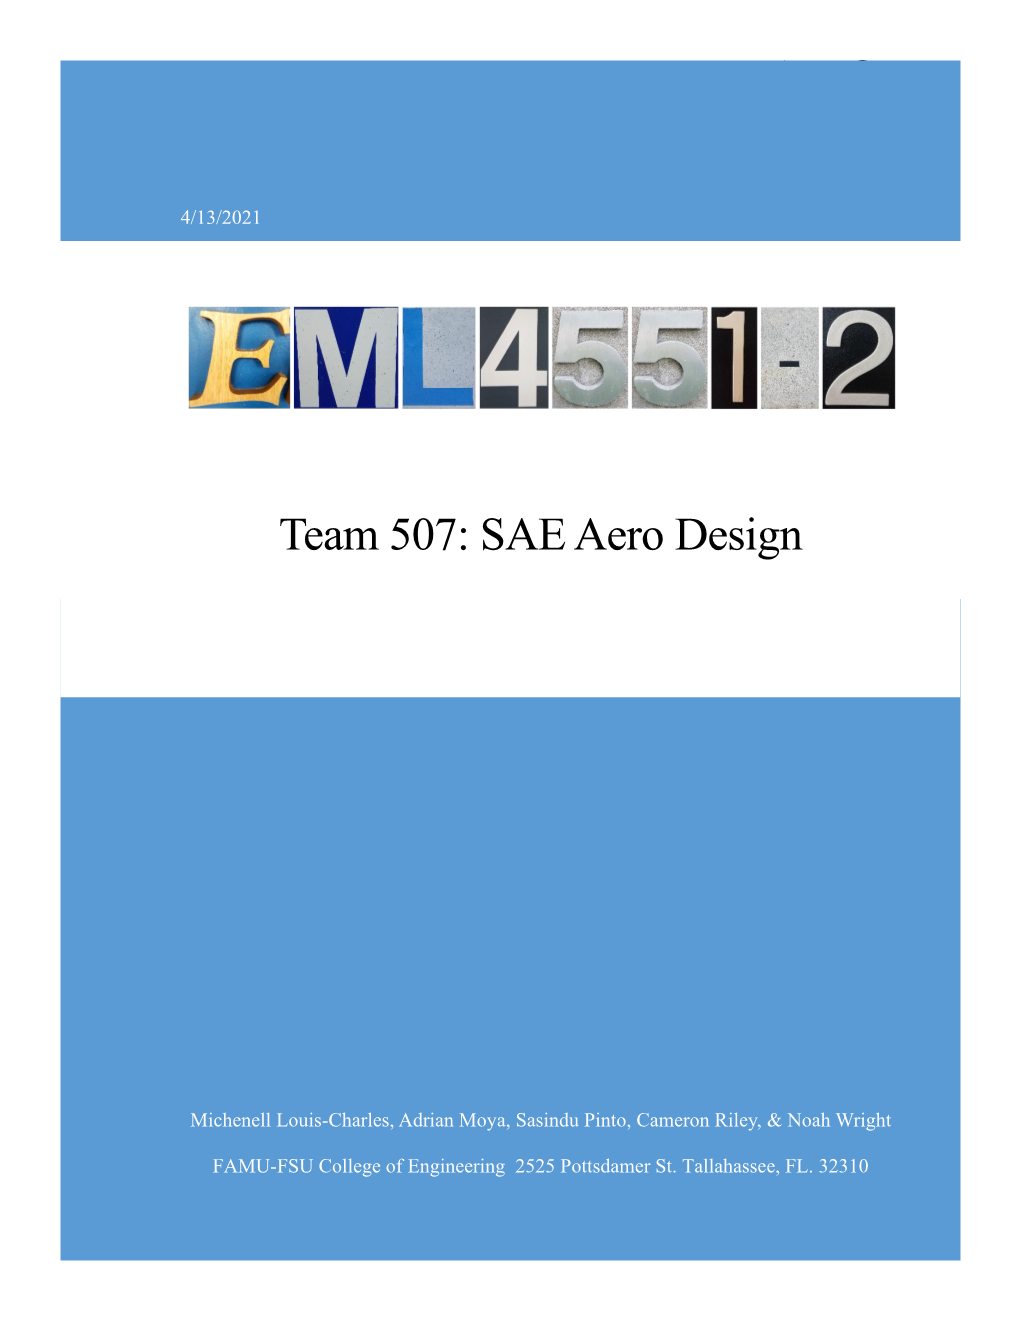 Team 507: SAE Aero Design